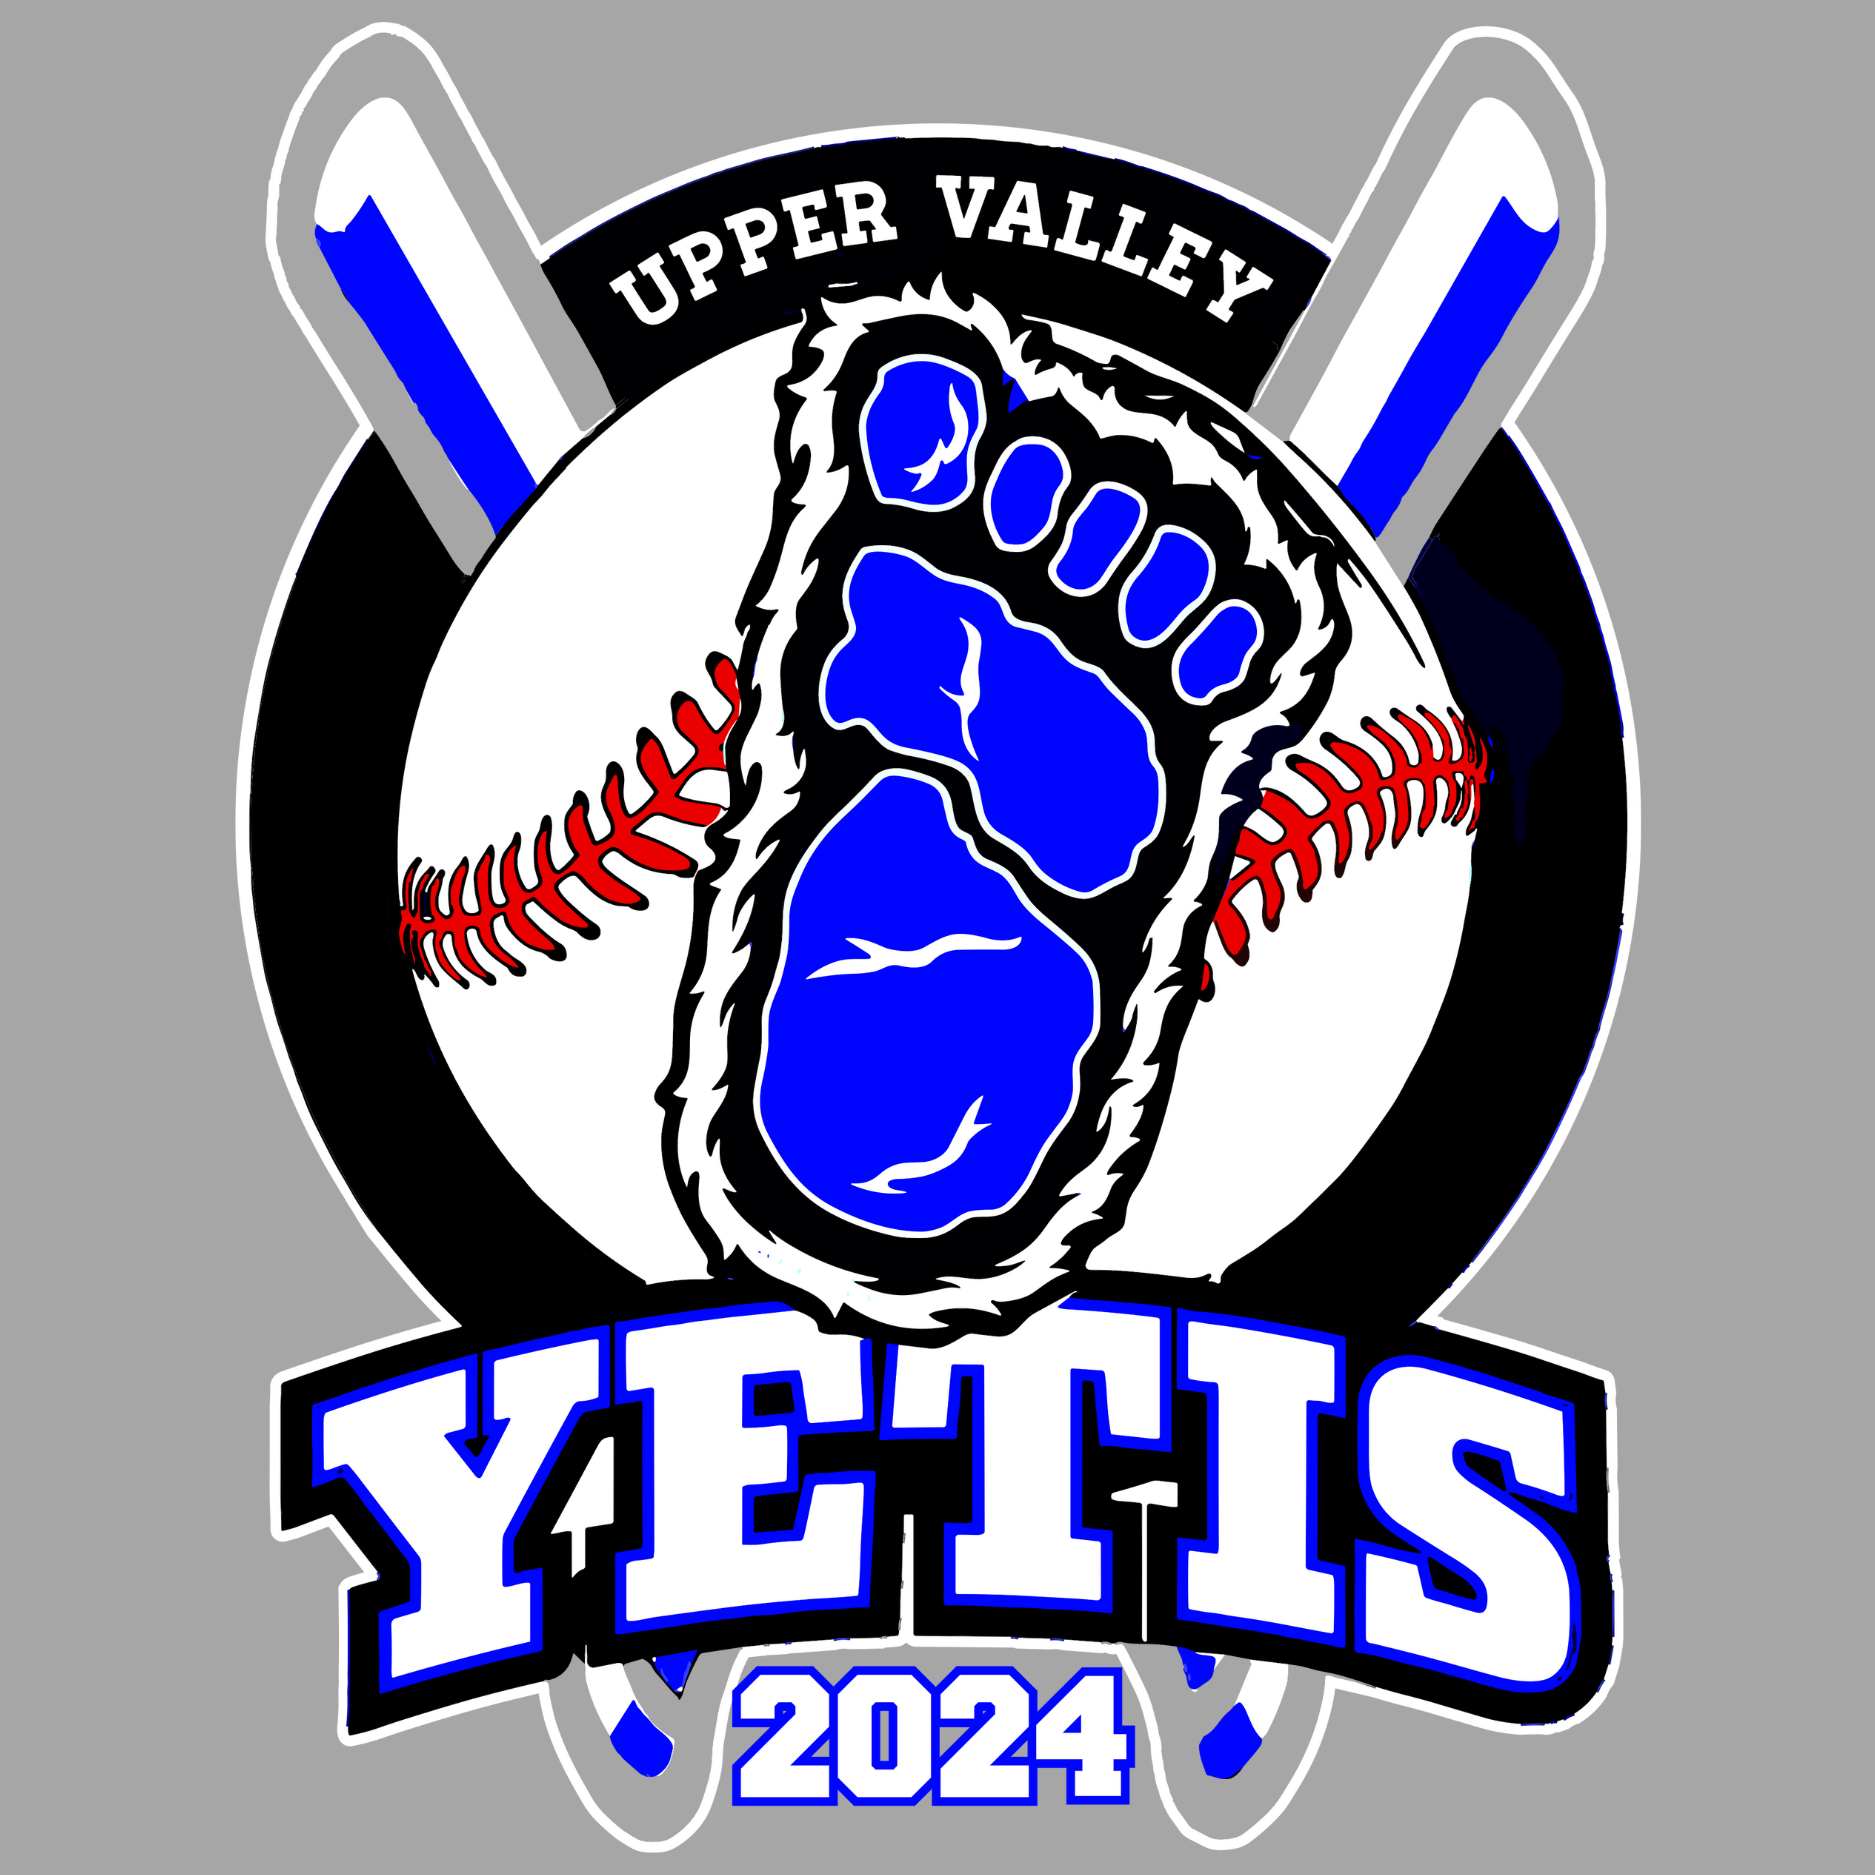 Upper Valley Yetis Baseball 2024 logo